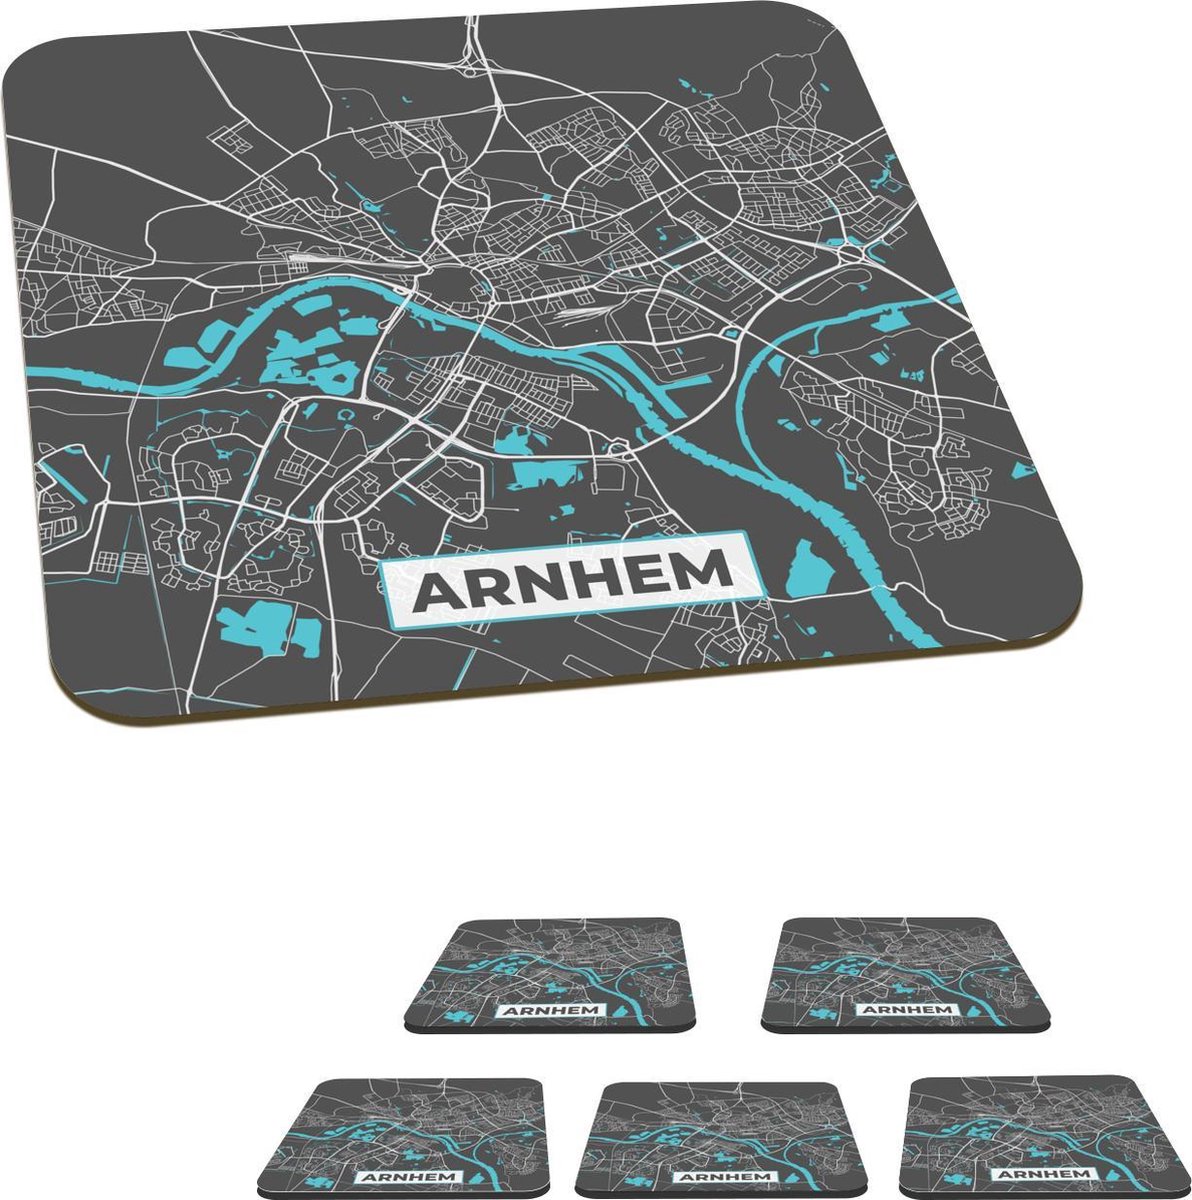 Onderzetters voor glazen - Plattegrond - Arnhem - Grijs - Blauw - 10x10 cm - Glasonderzetters - 6 stuks